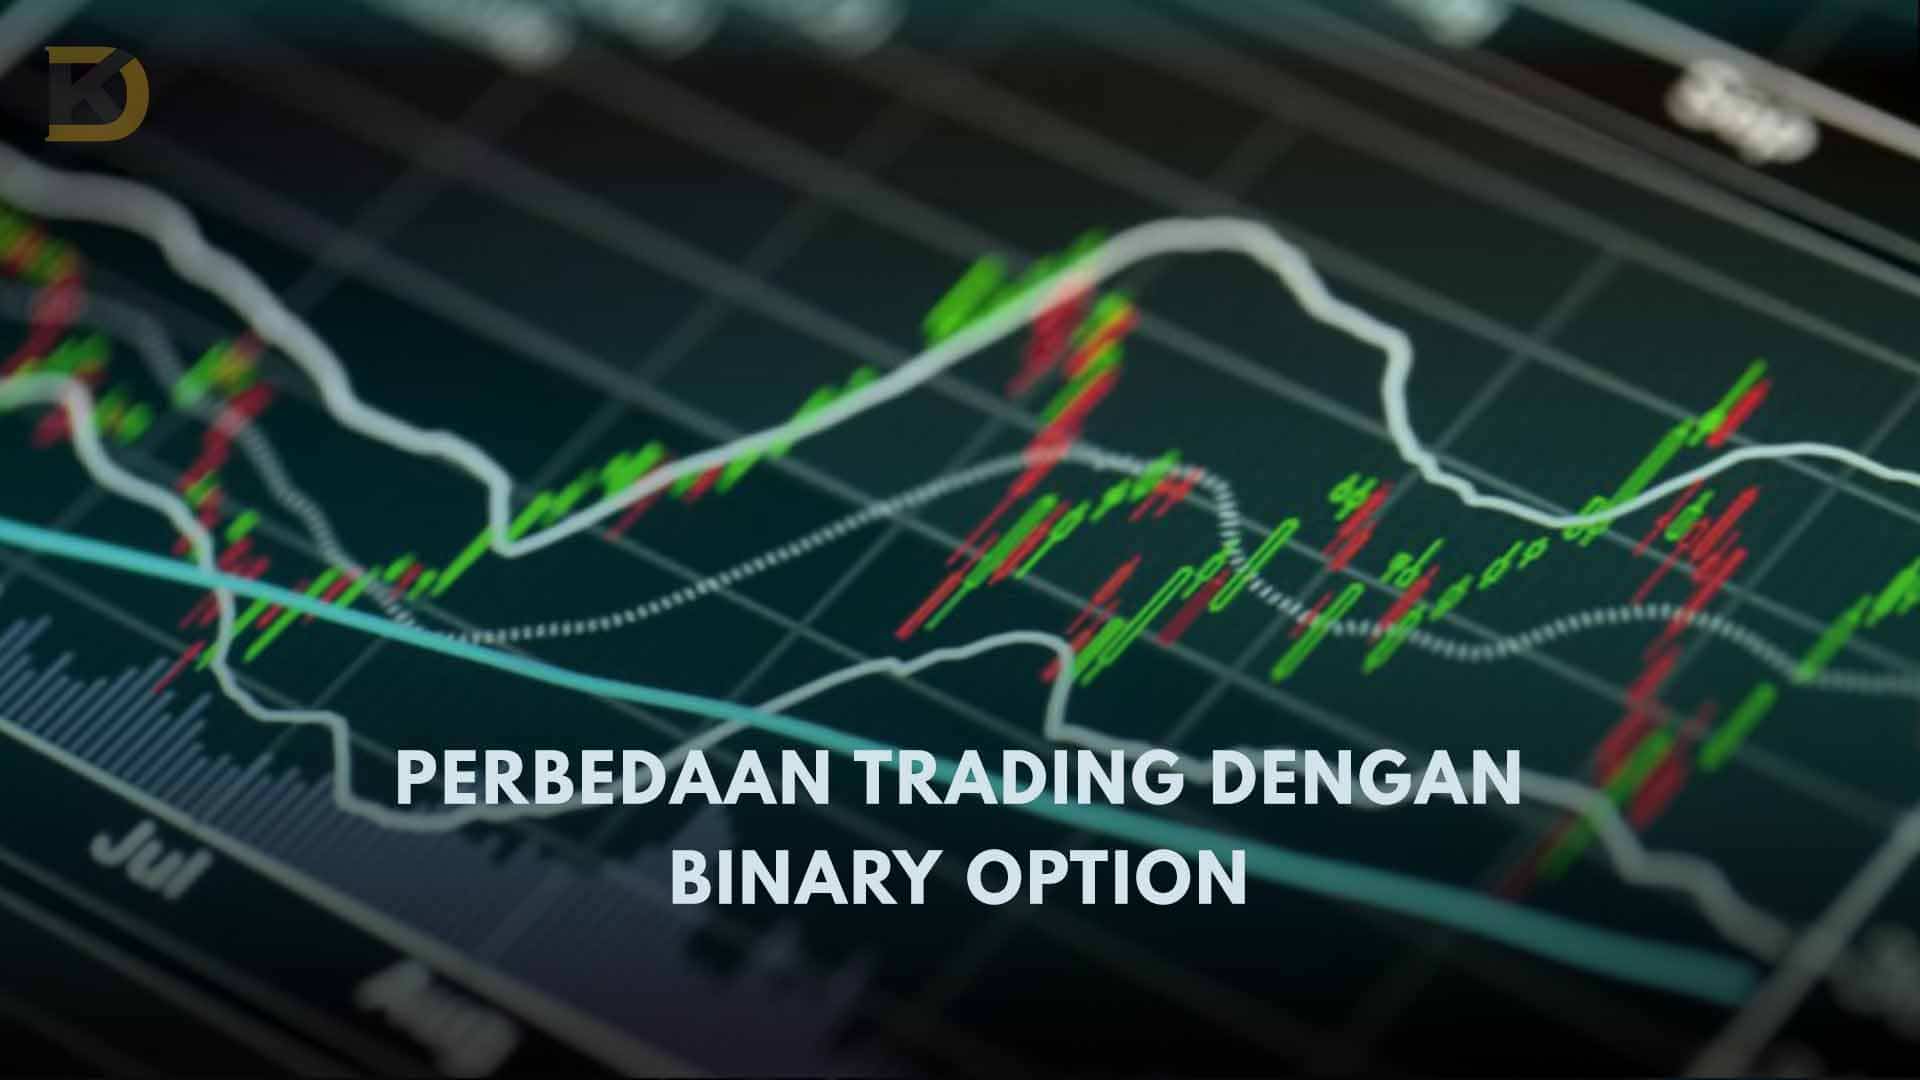 Perbedaan Binary Option dan Trading Yang Perlu Kamu Ketahui